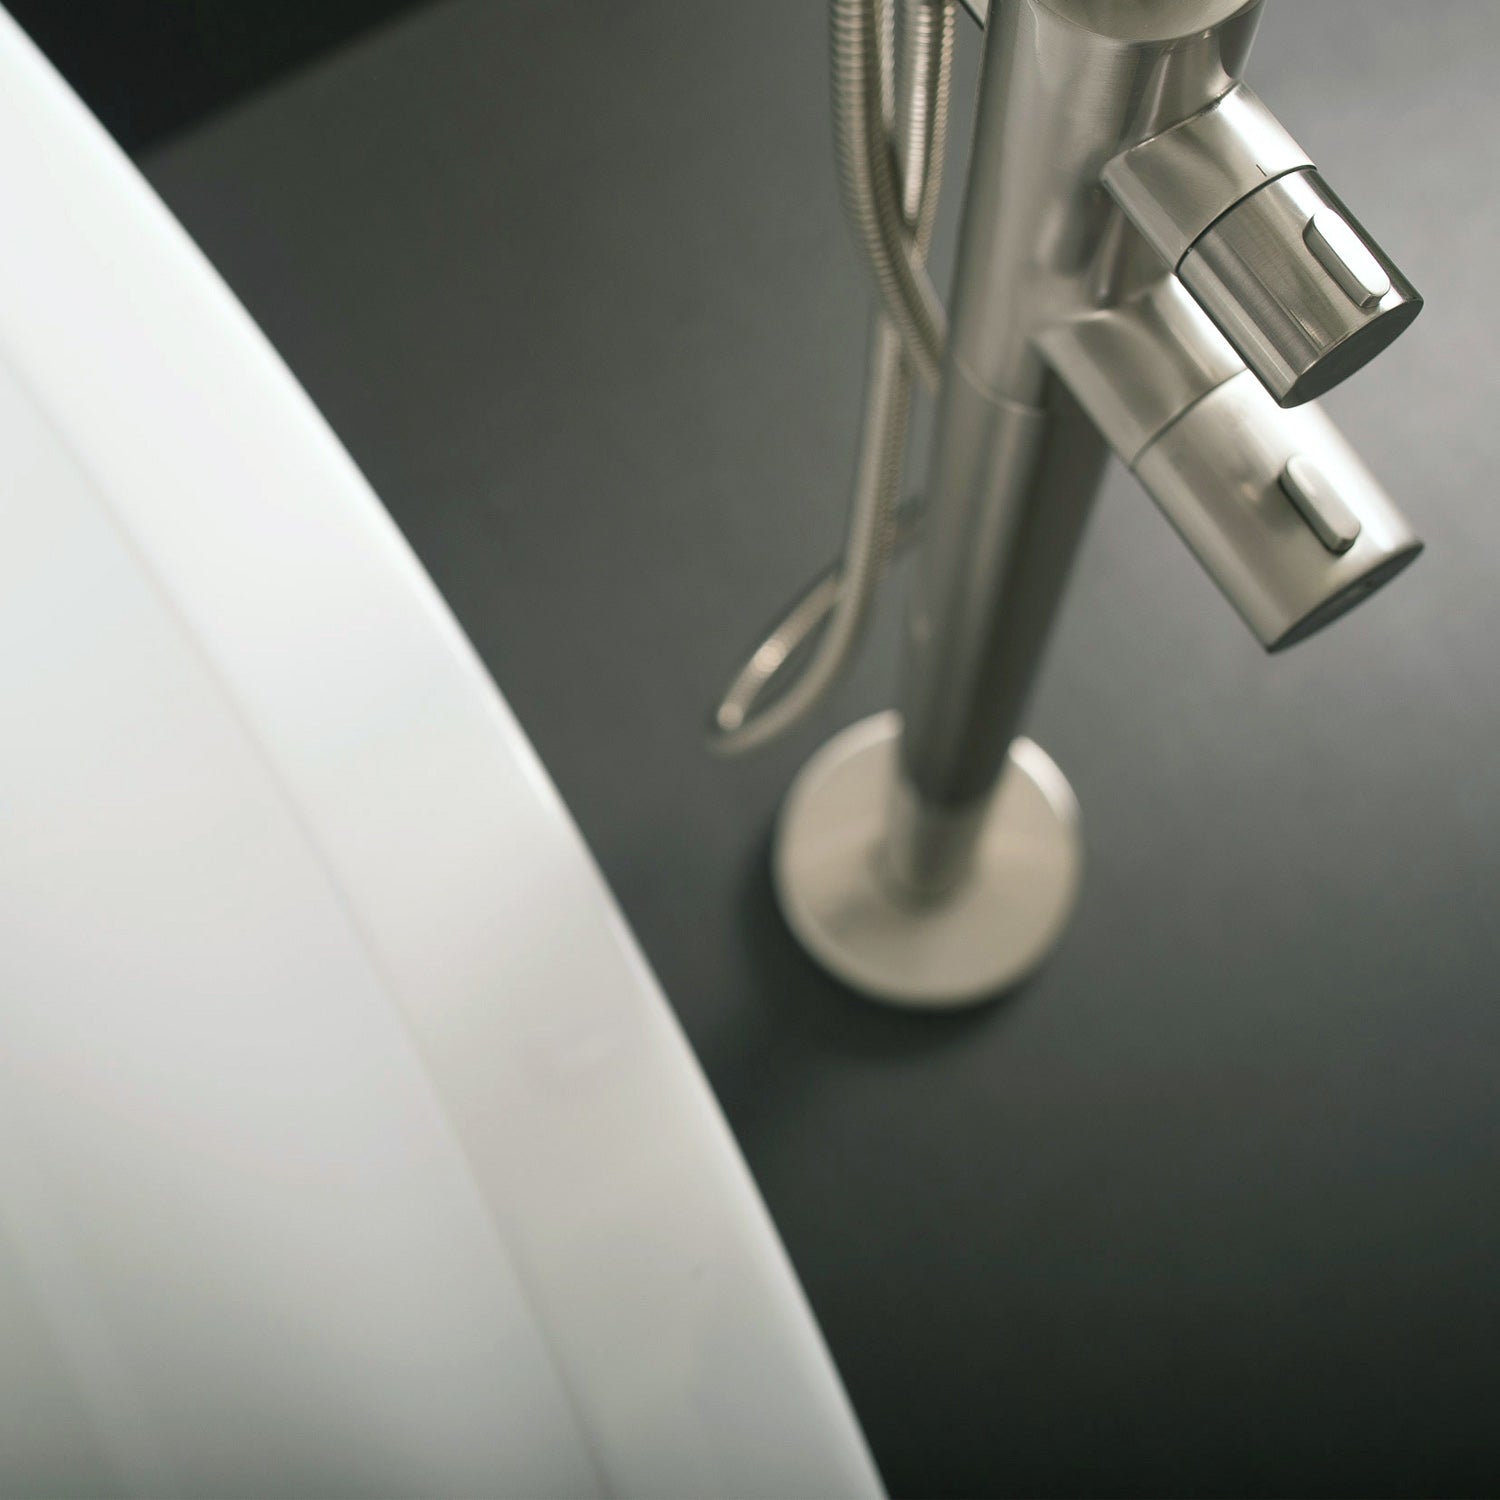 DAX - Llenador de bañera independiente con ducha de mano y boquilla de cuello de cisne, cuerpo de acero inoxidable, acabado cepillado, 5-13/16 x 45-13/16 x 9-7/16 pulgadas (DAX-807-BN)